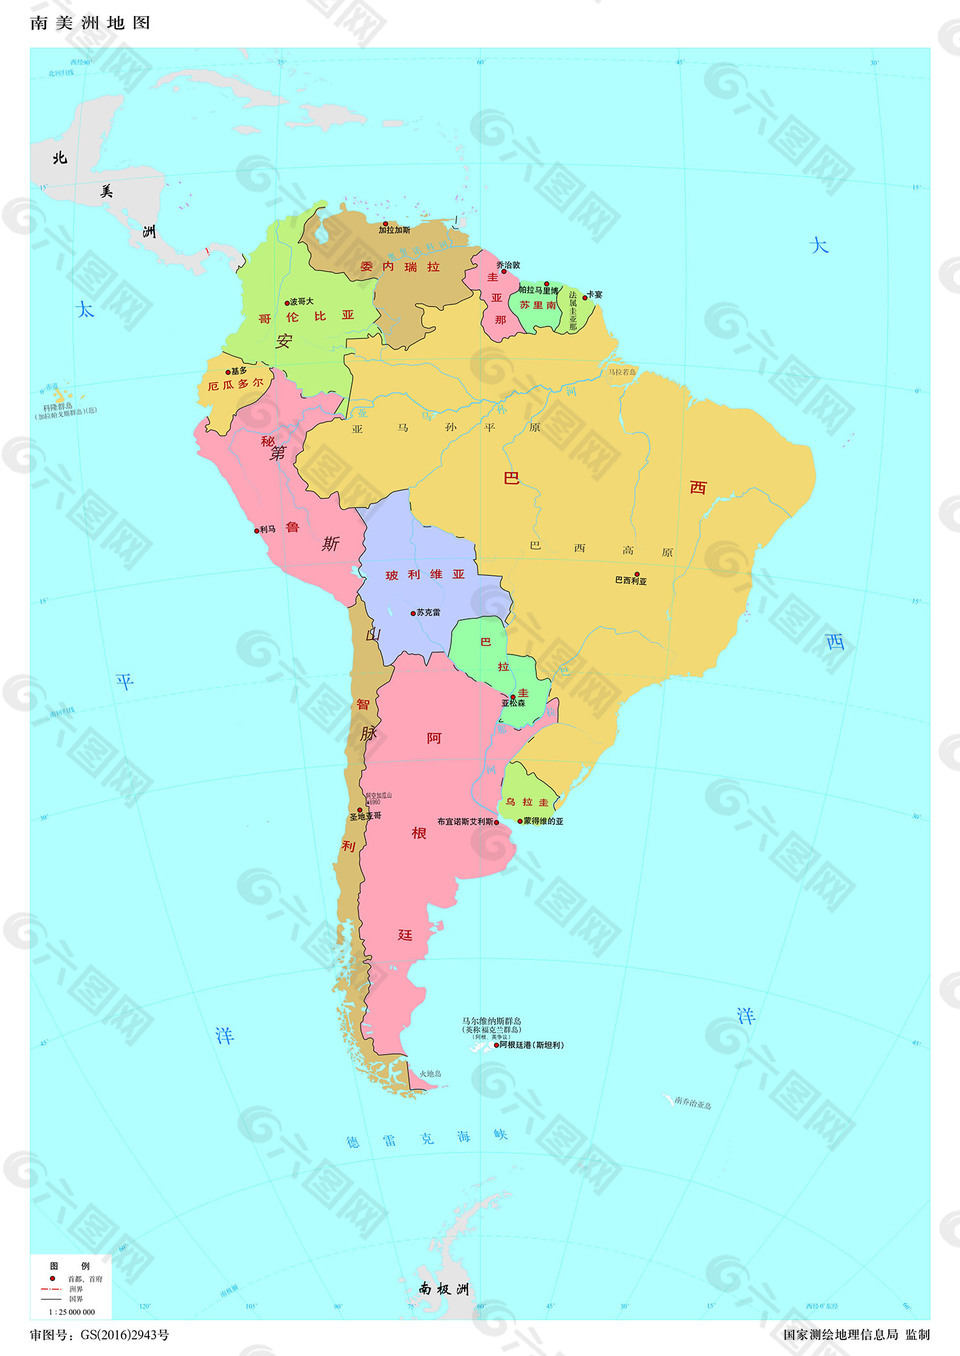 南美洲地图1:2500万8开分国设色